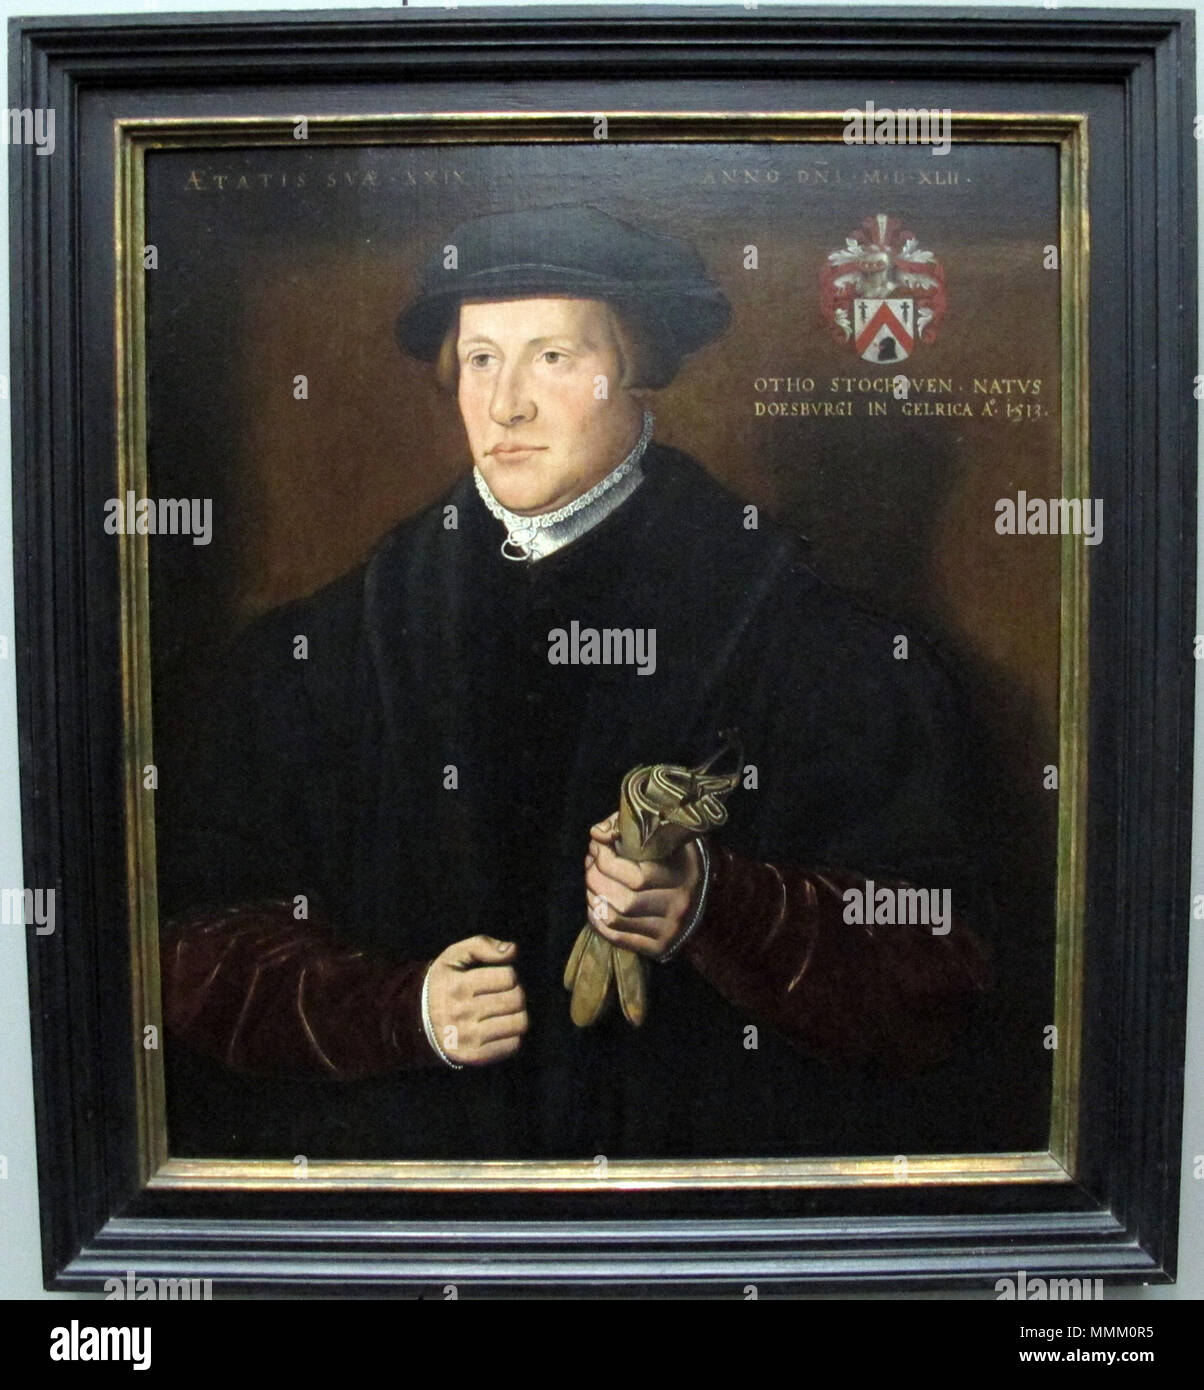 . Ambrosius benson, ritratto di otho stochoven, 1542  Portrait of Otho Stochoven. 1542. Ambrosius benson, ritratto di otho stochoven, 1542 Stock Photo